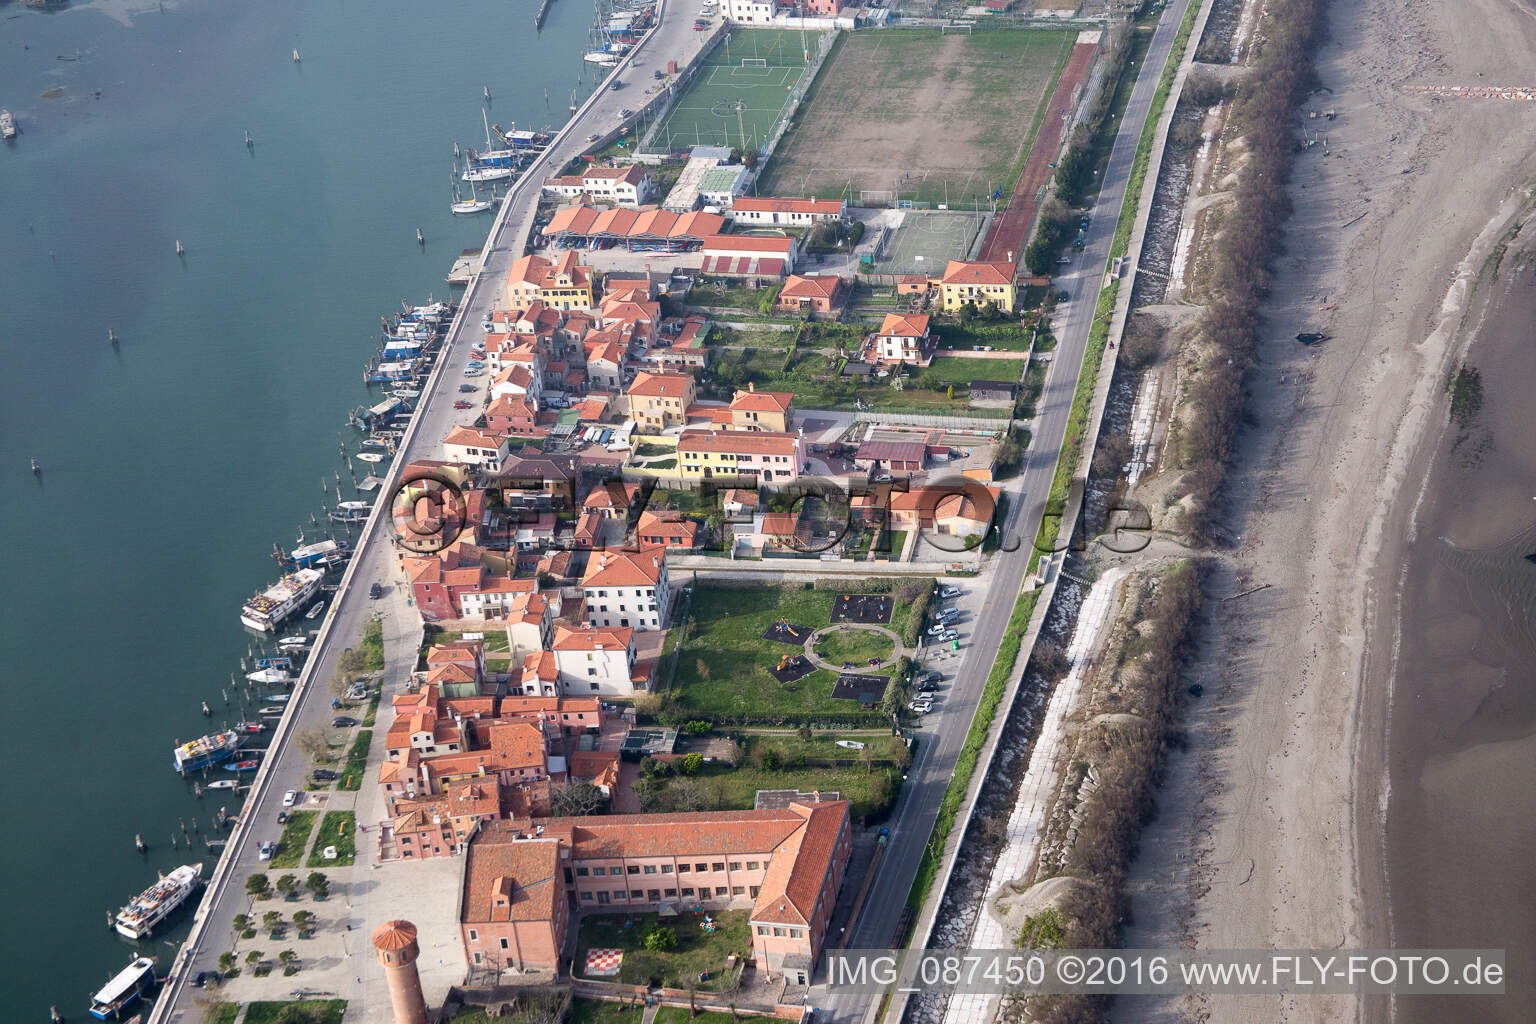 Oblique view of Settlement area in the district Pellestrina in Venedig in Venetien, Italy